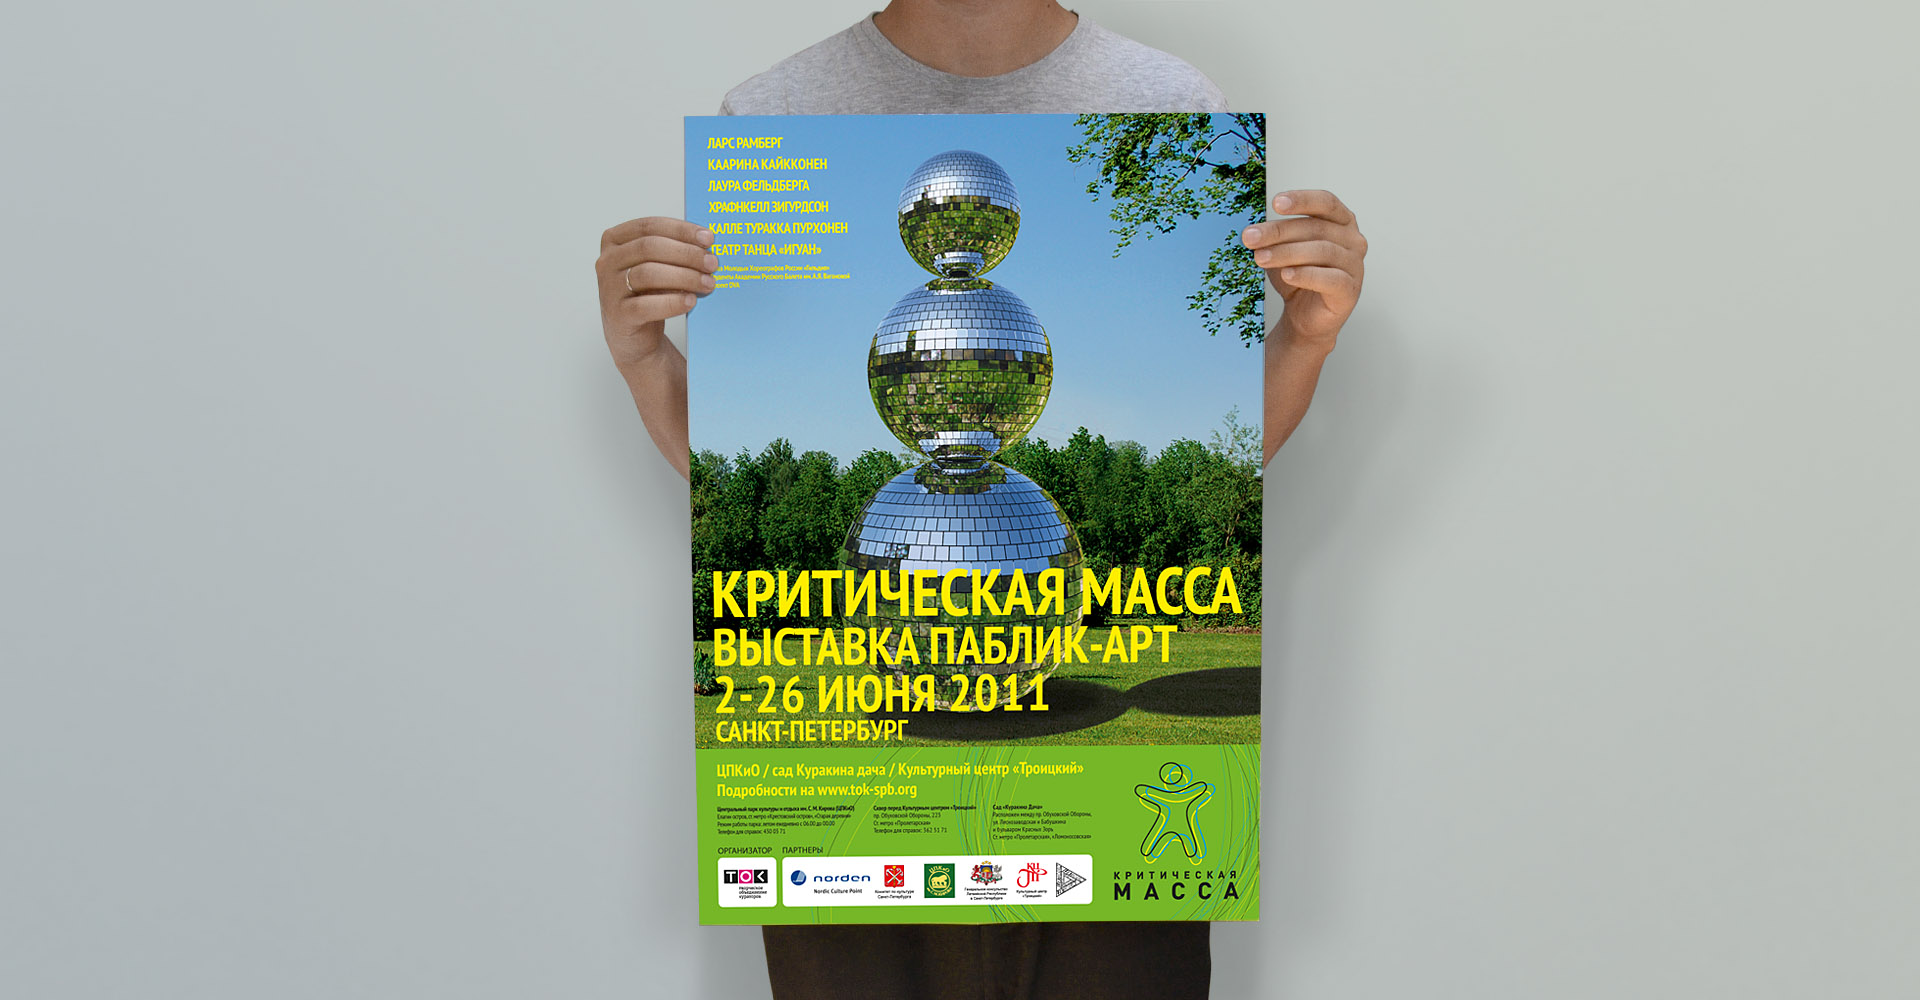 Постер проекта "Критическая масса 2011"